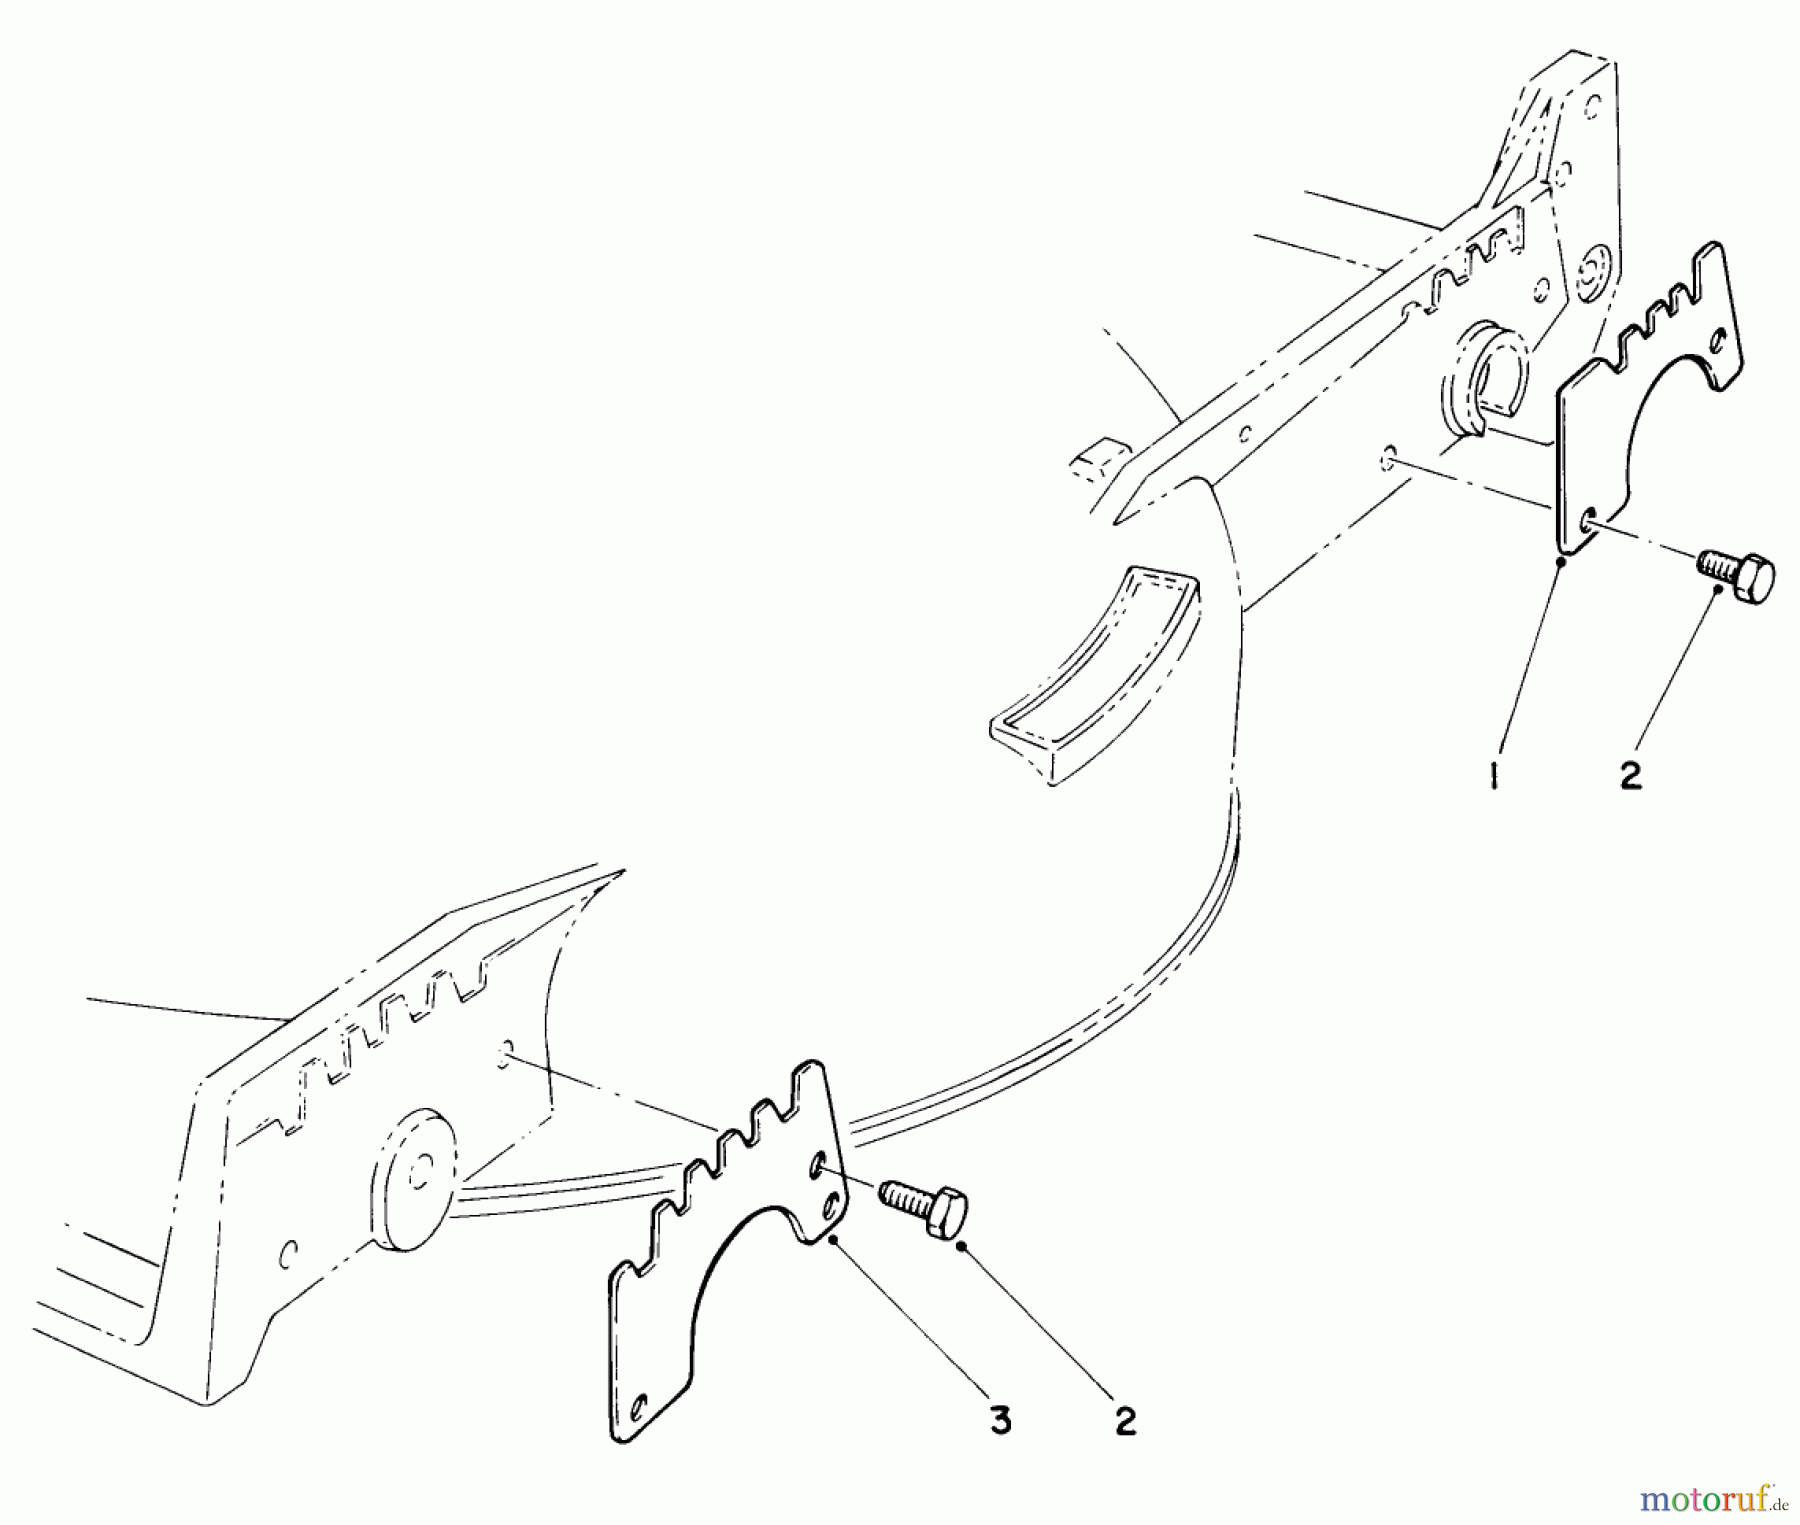  Toro Neu Mowers, Walk-Behind Seite 1 20715 - Toro Lawnmower, 1984 (4000001-4999999) WEAR PLATE KIT NO. 49-4080 (OPTIONAL)